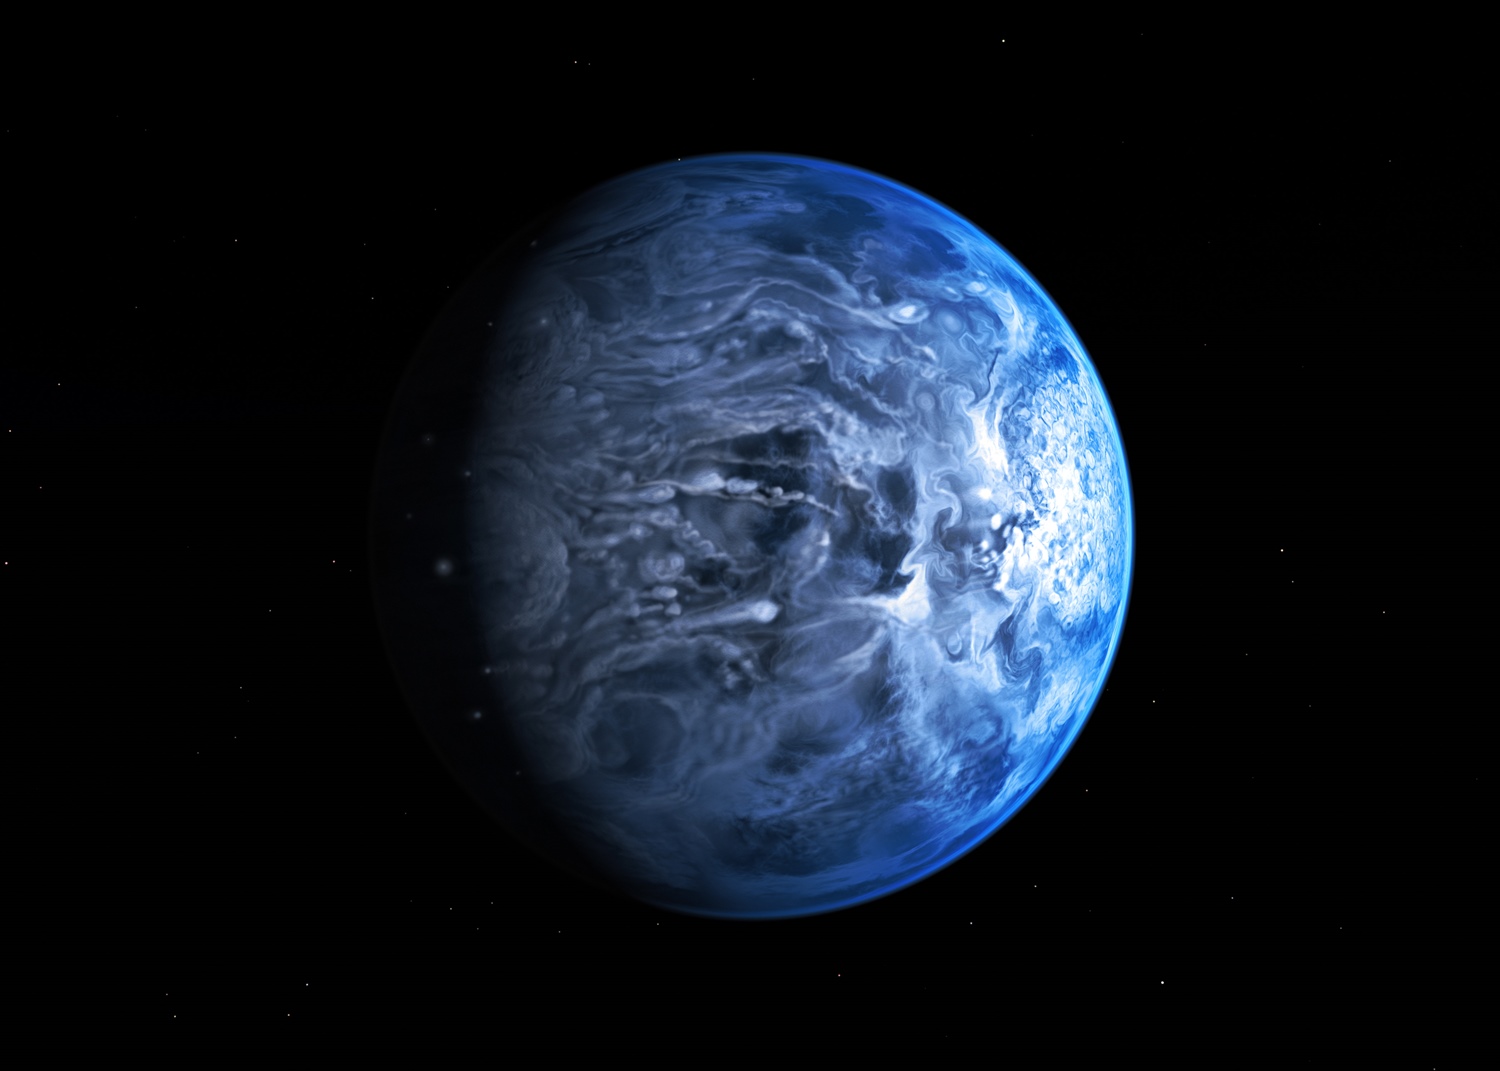 Modrá planeta HD 189733 b. Credit: NASA, ESA, and G. Bacon (AURA/STScI)